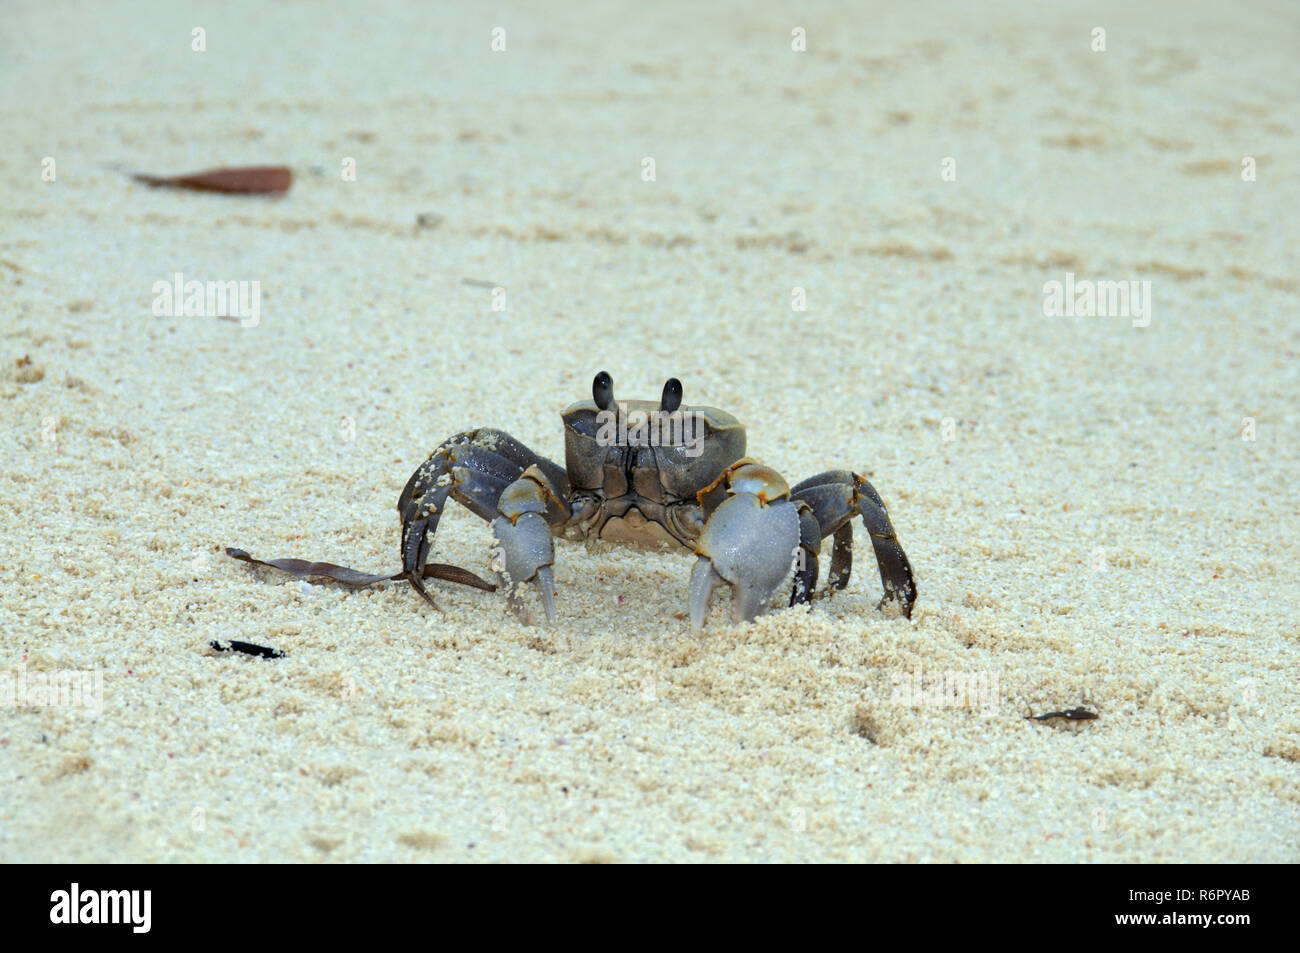 Le crabe fantôme rose (Ocypode ryderi) effacer burrow de sable à marée basse, Denis Island, de l'Océan Indien, les Seychelles Banque D'Images